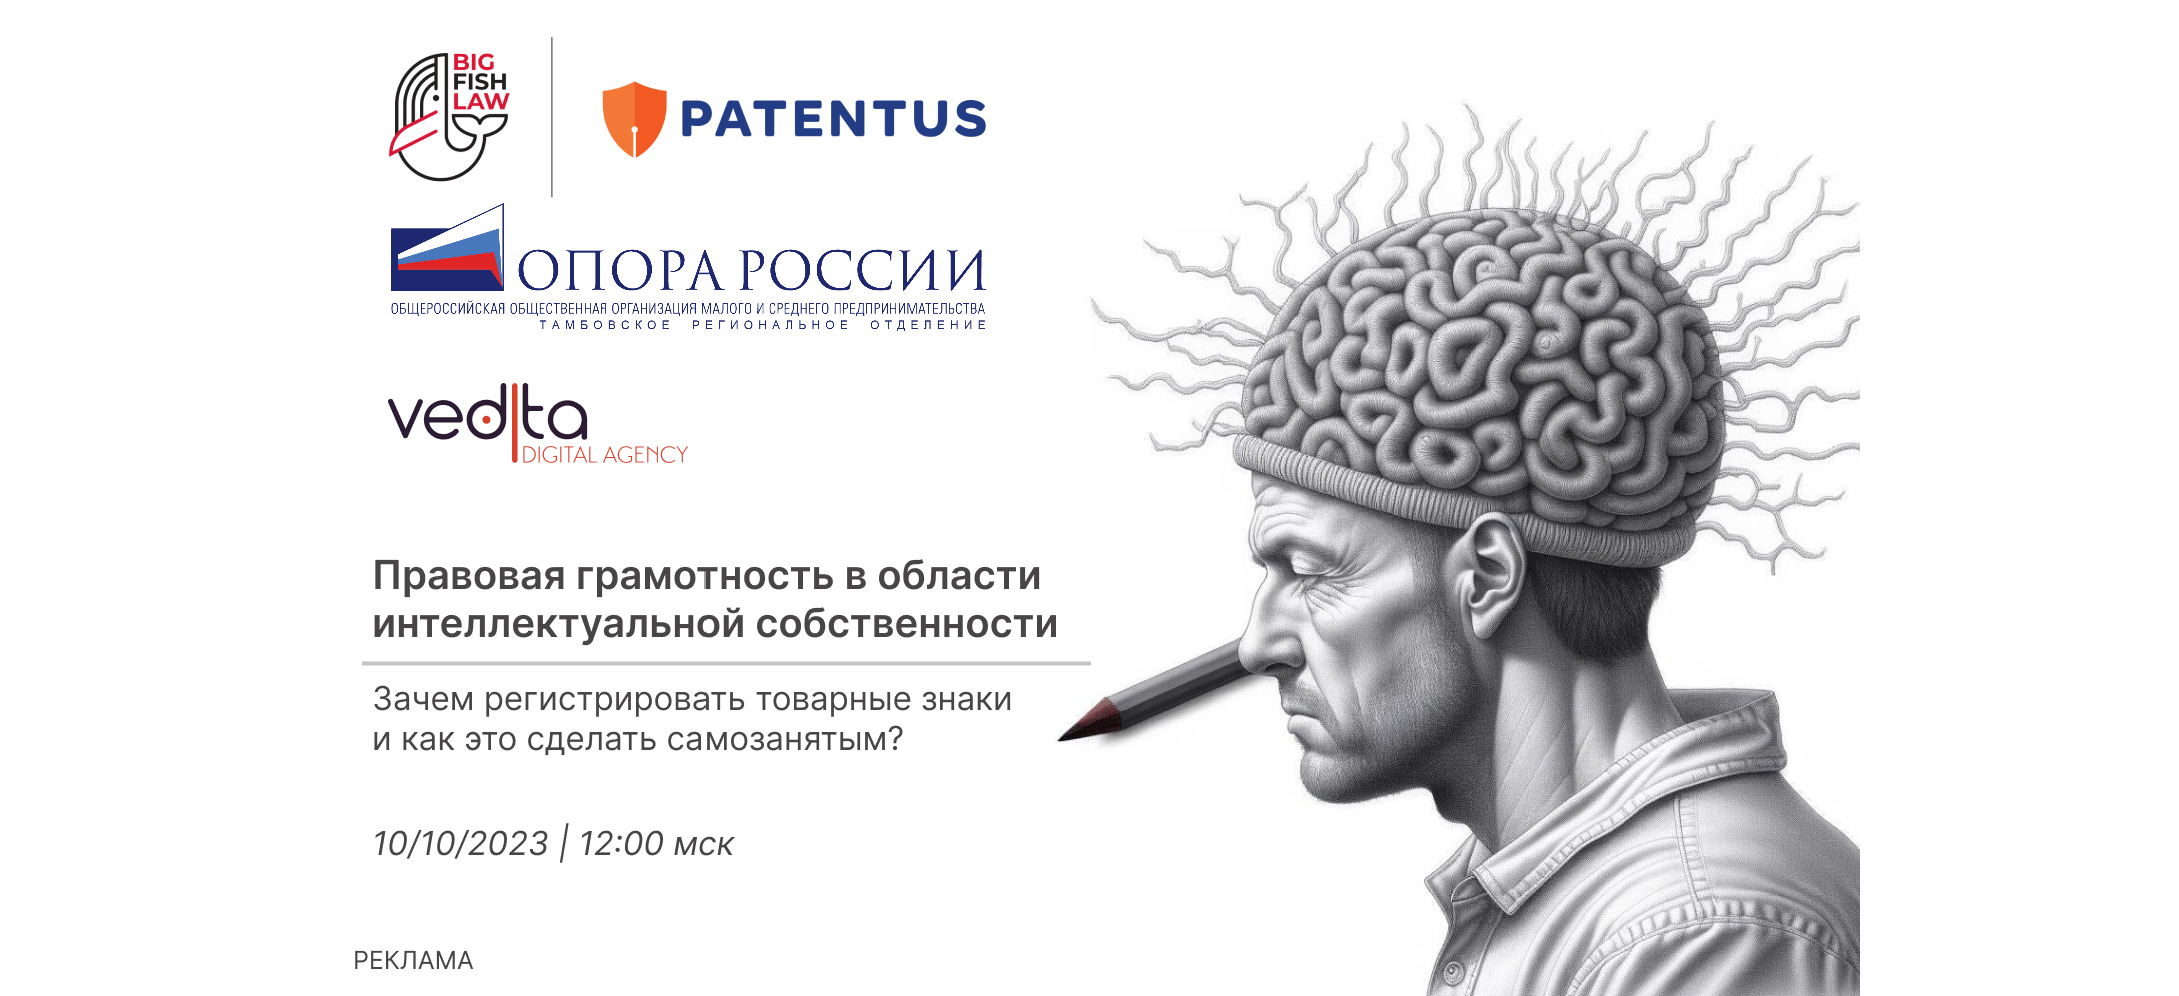 PATENTUS проведет вебинар совместно с Vedita и общественным объединением "Опора России"